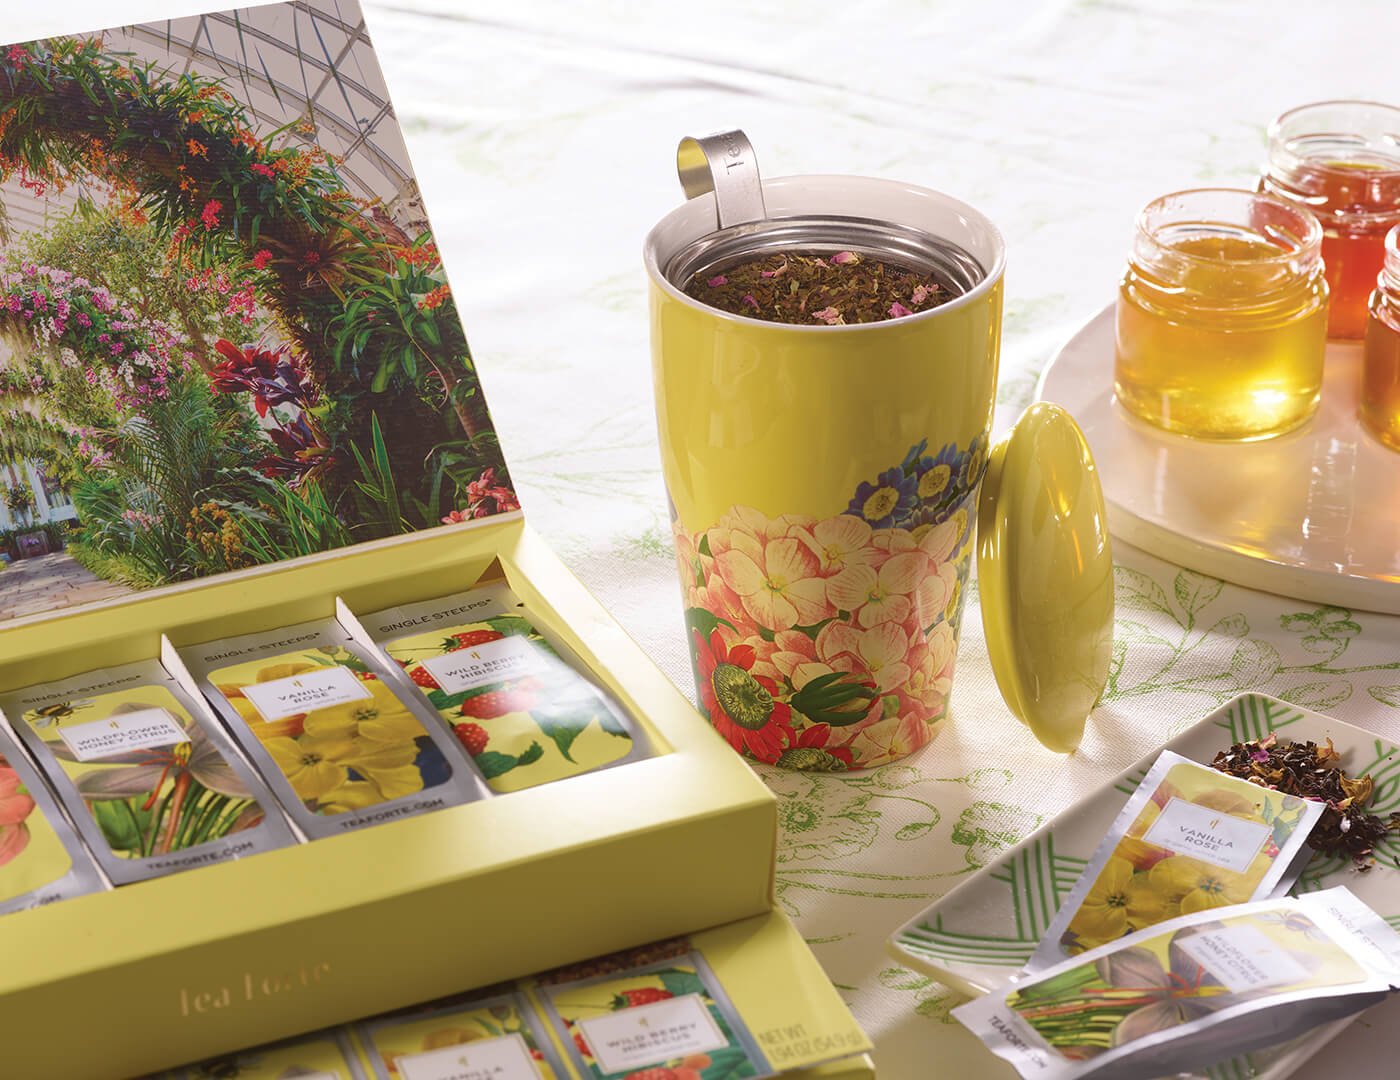 Tea Forte Kati Cup Soleil, KATI® Steeping Cup & Infuser Soleil